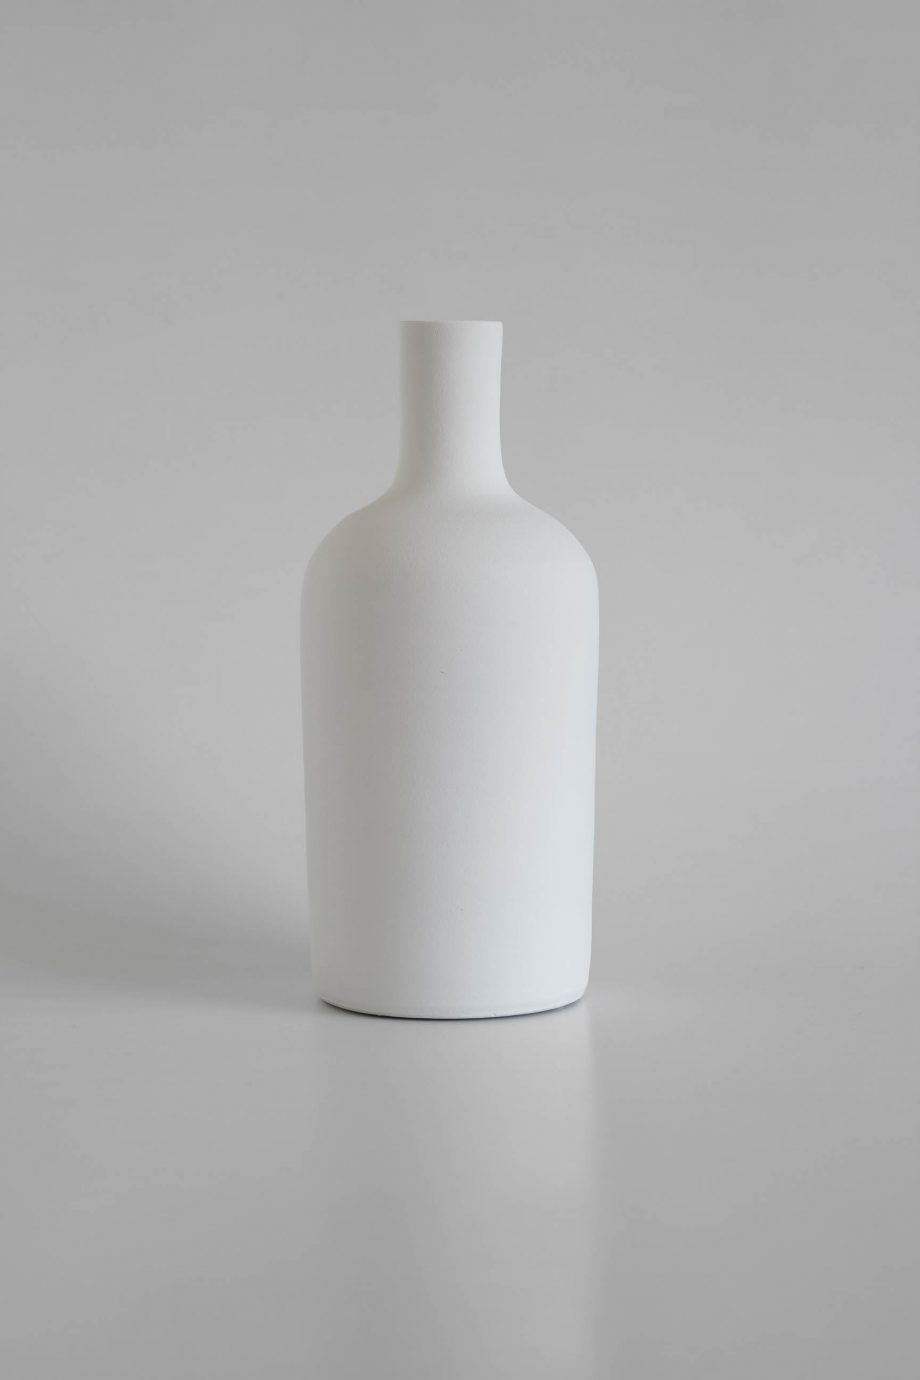 Dekorative hohe weiße Vase von der portugiesischen Handwerksmarke o cactuu.